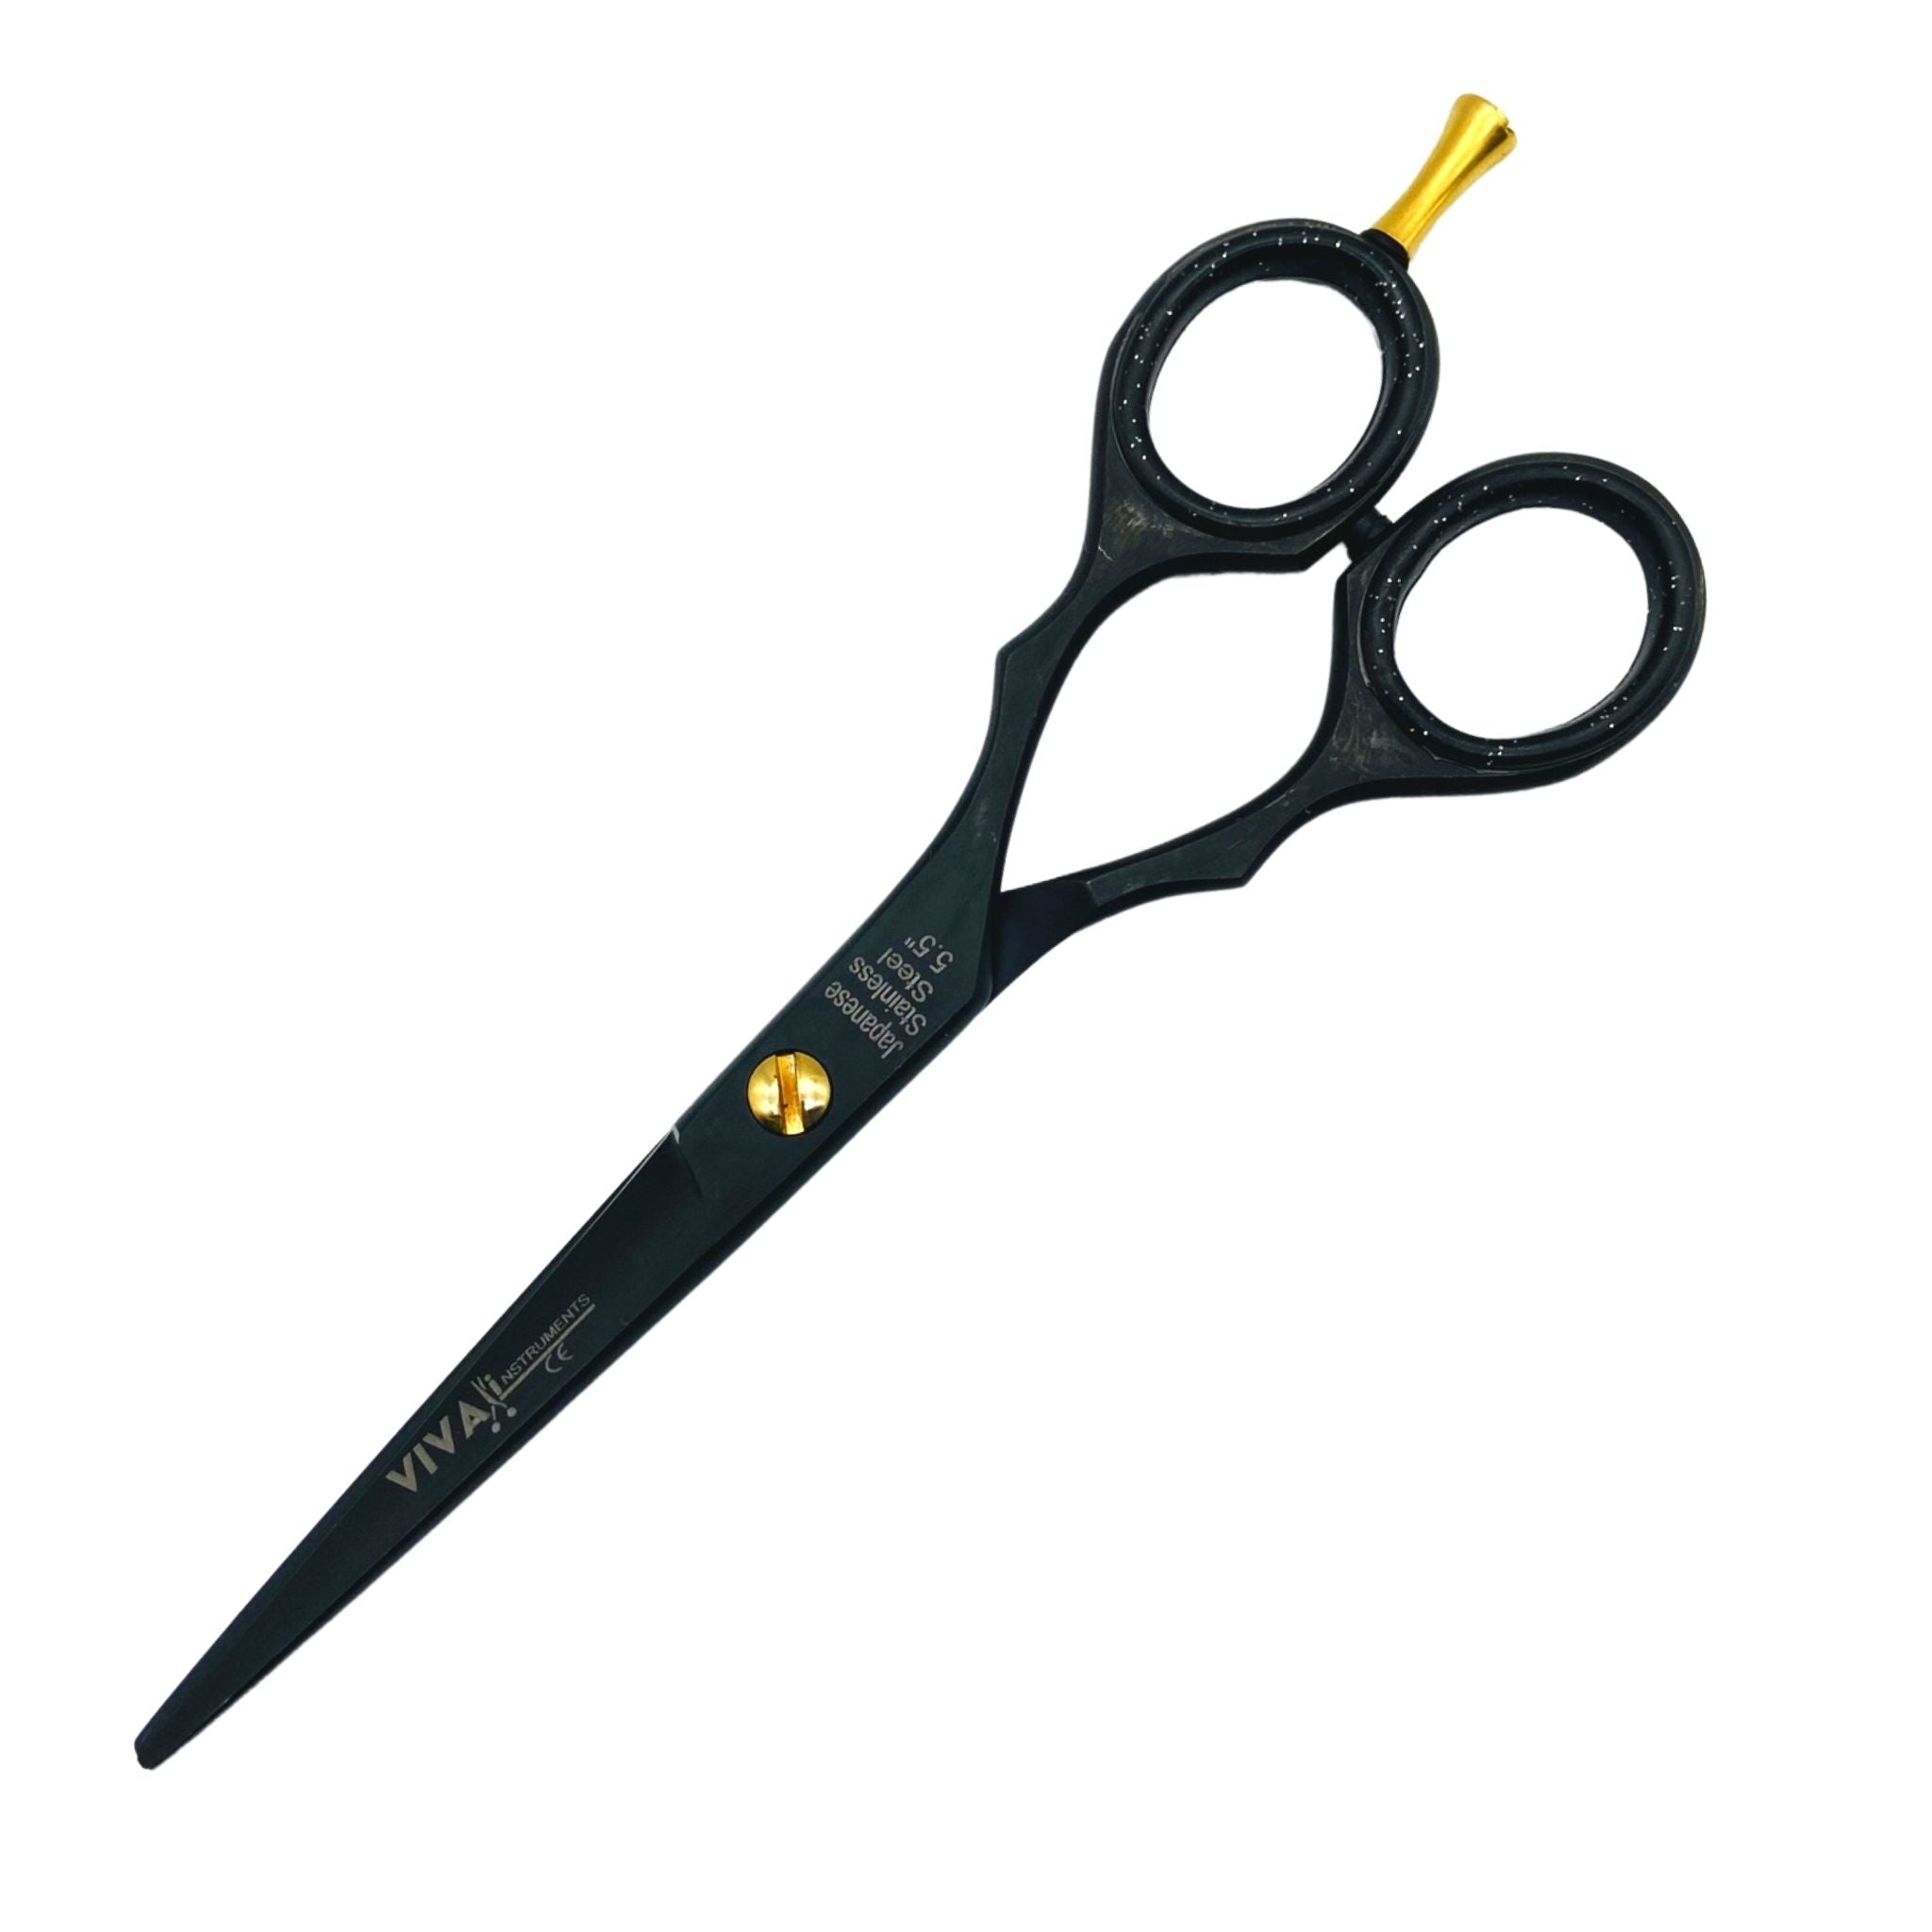 Hair Scissors - Hairdressing Barber Scissors 5.5'' Inch - Black Colour